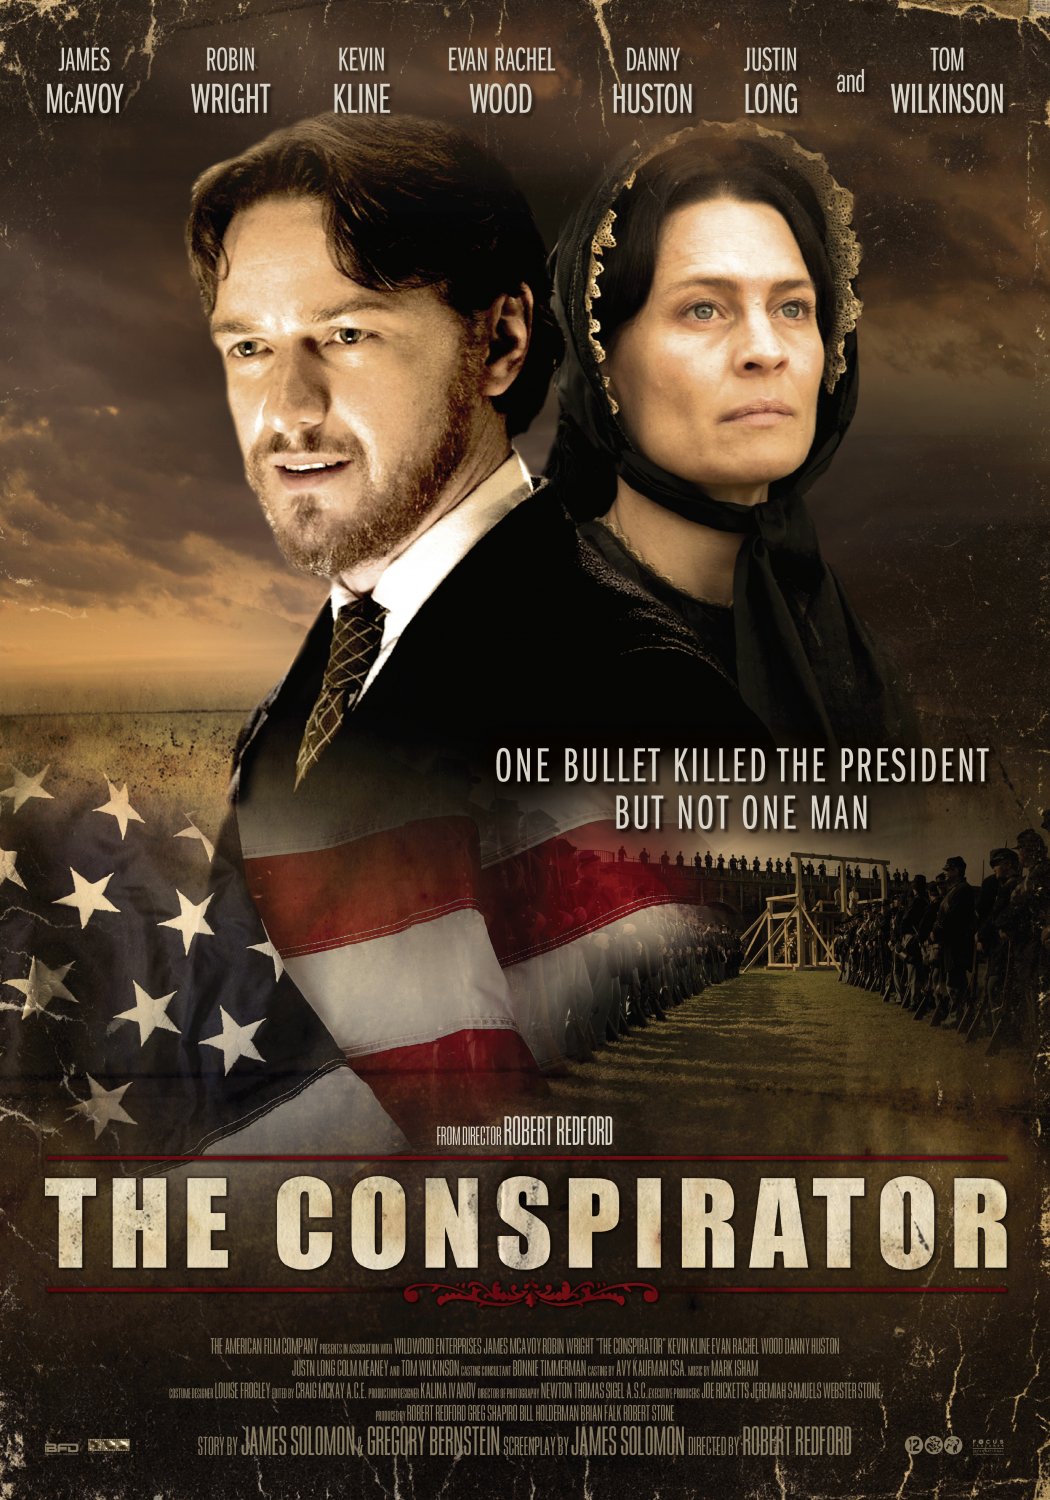 ดูหนัง The Conspirator ดูหนังฟรี เต็มเรื่อง Full HD 24 ช.ม.